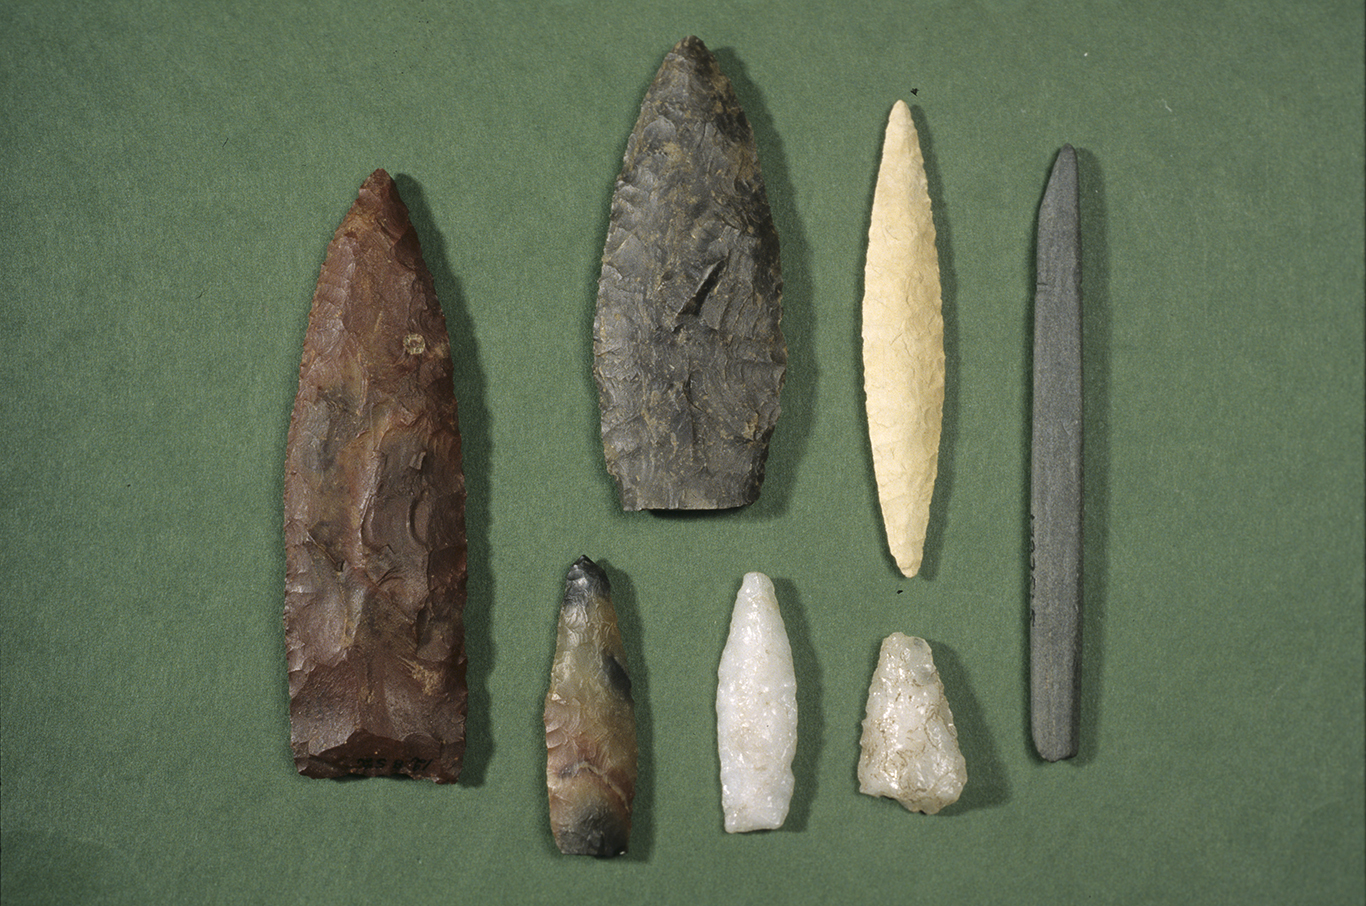 Seitsemän erilaista nuolenkärkeä Ilomantsista. Kukin nuolenkärki on tehty eri kivilajieista. Kuva: Museovirasto.